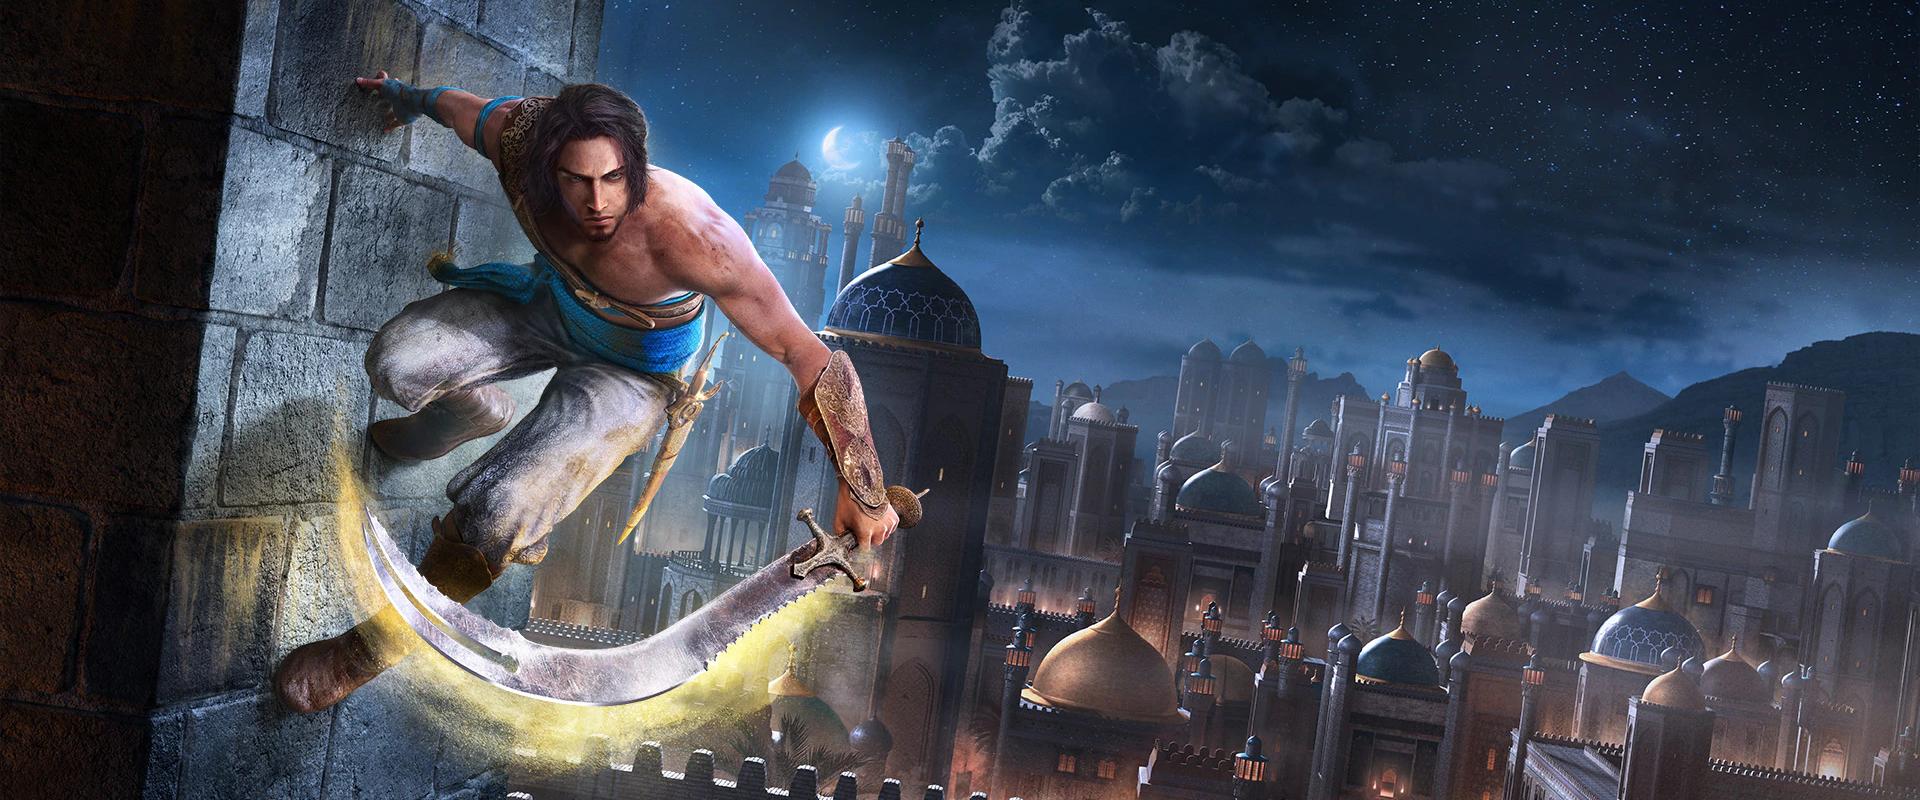 Még mindig készül a Prince of Persia remake, de rá sem fogsz ismerni